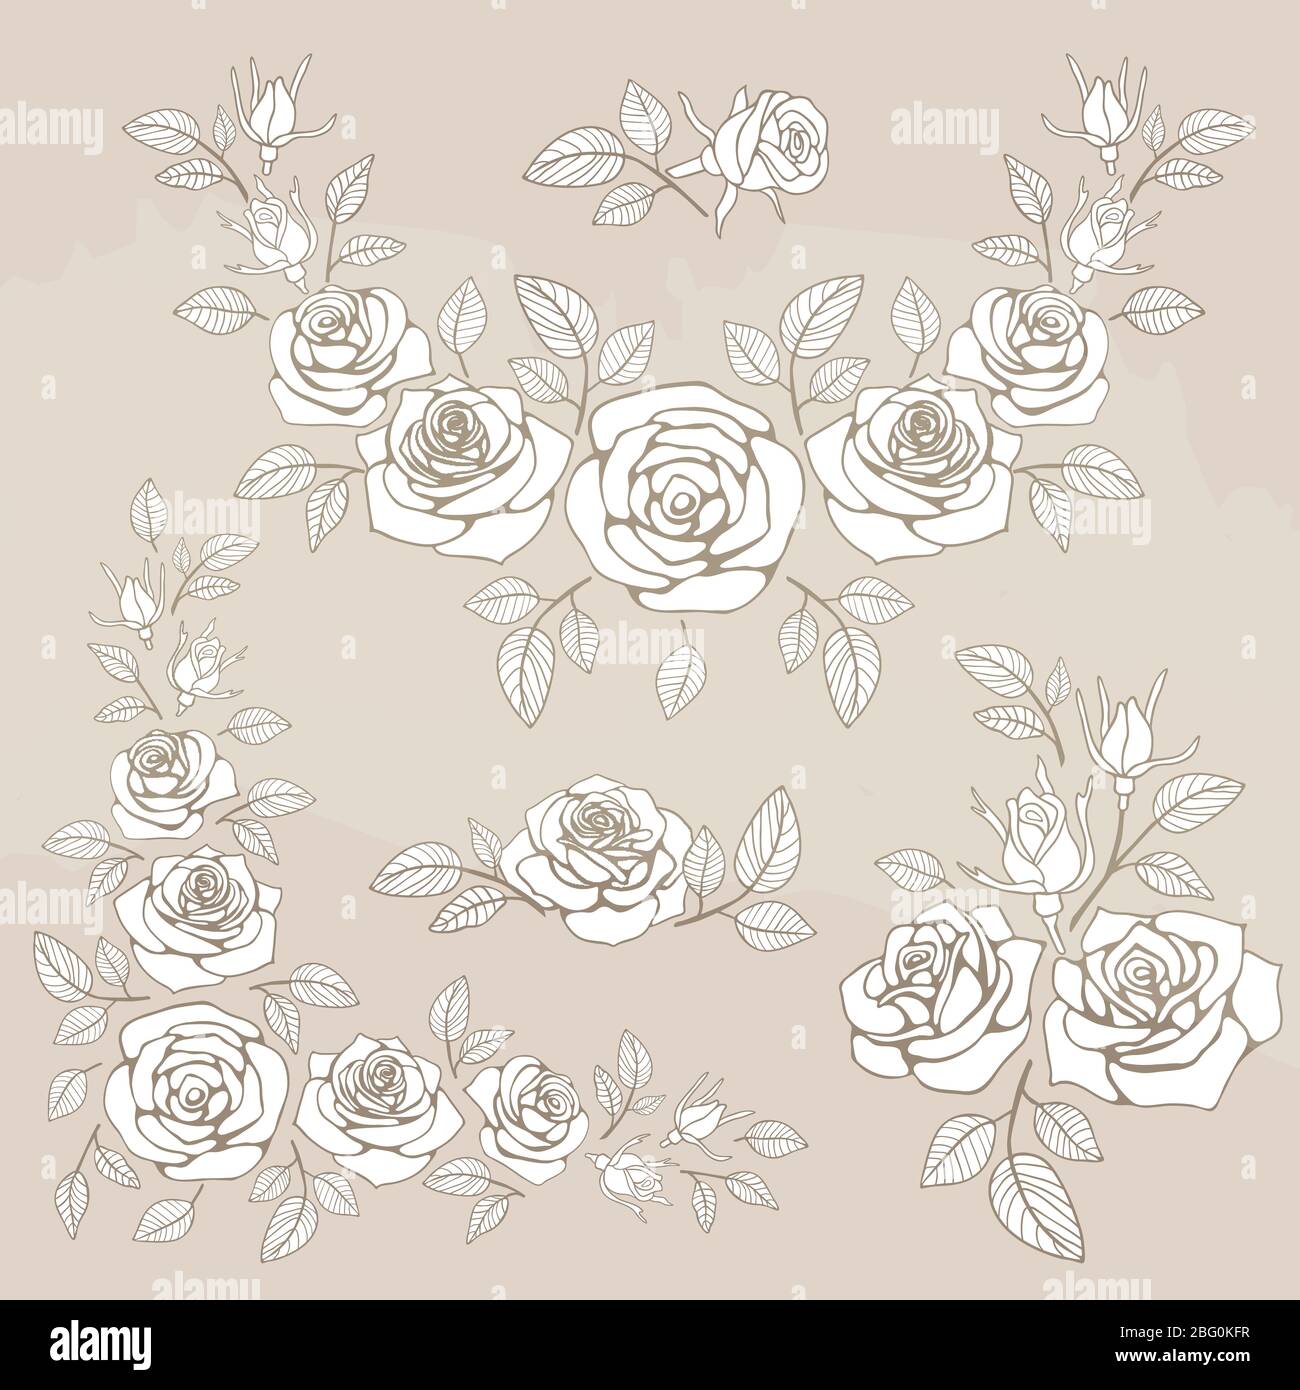 Romantischer Vintage-Strauß mit Rosen und Blättern. Vektorgrafik Stock Vektor